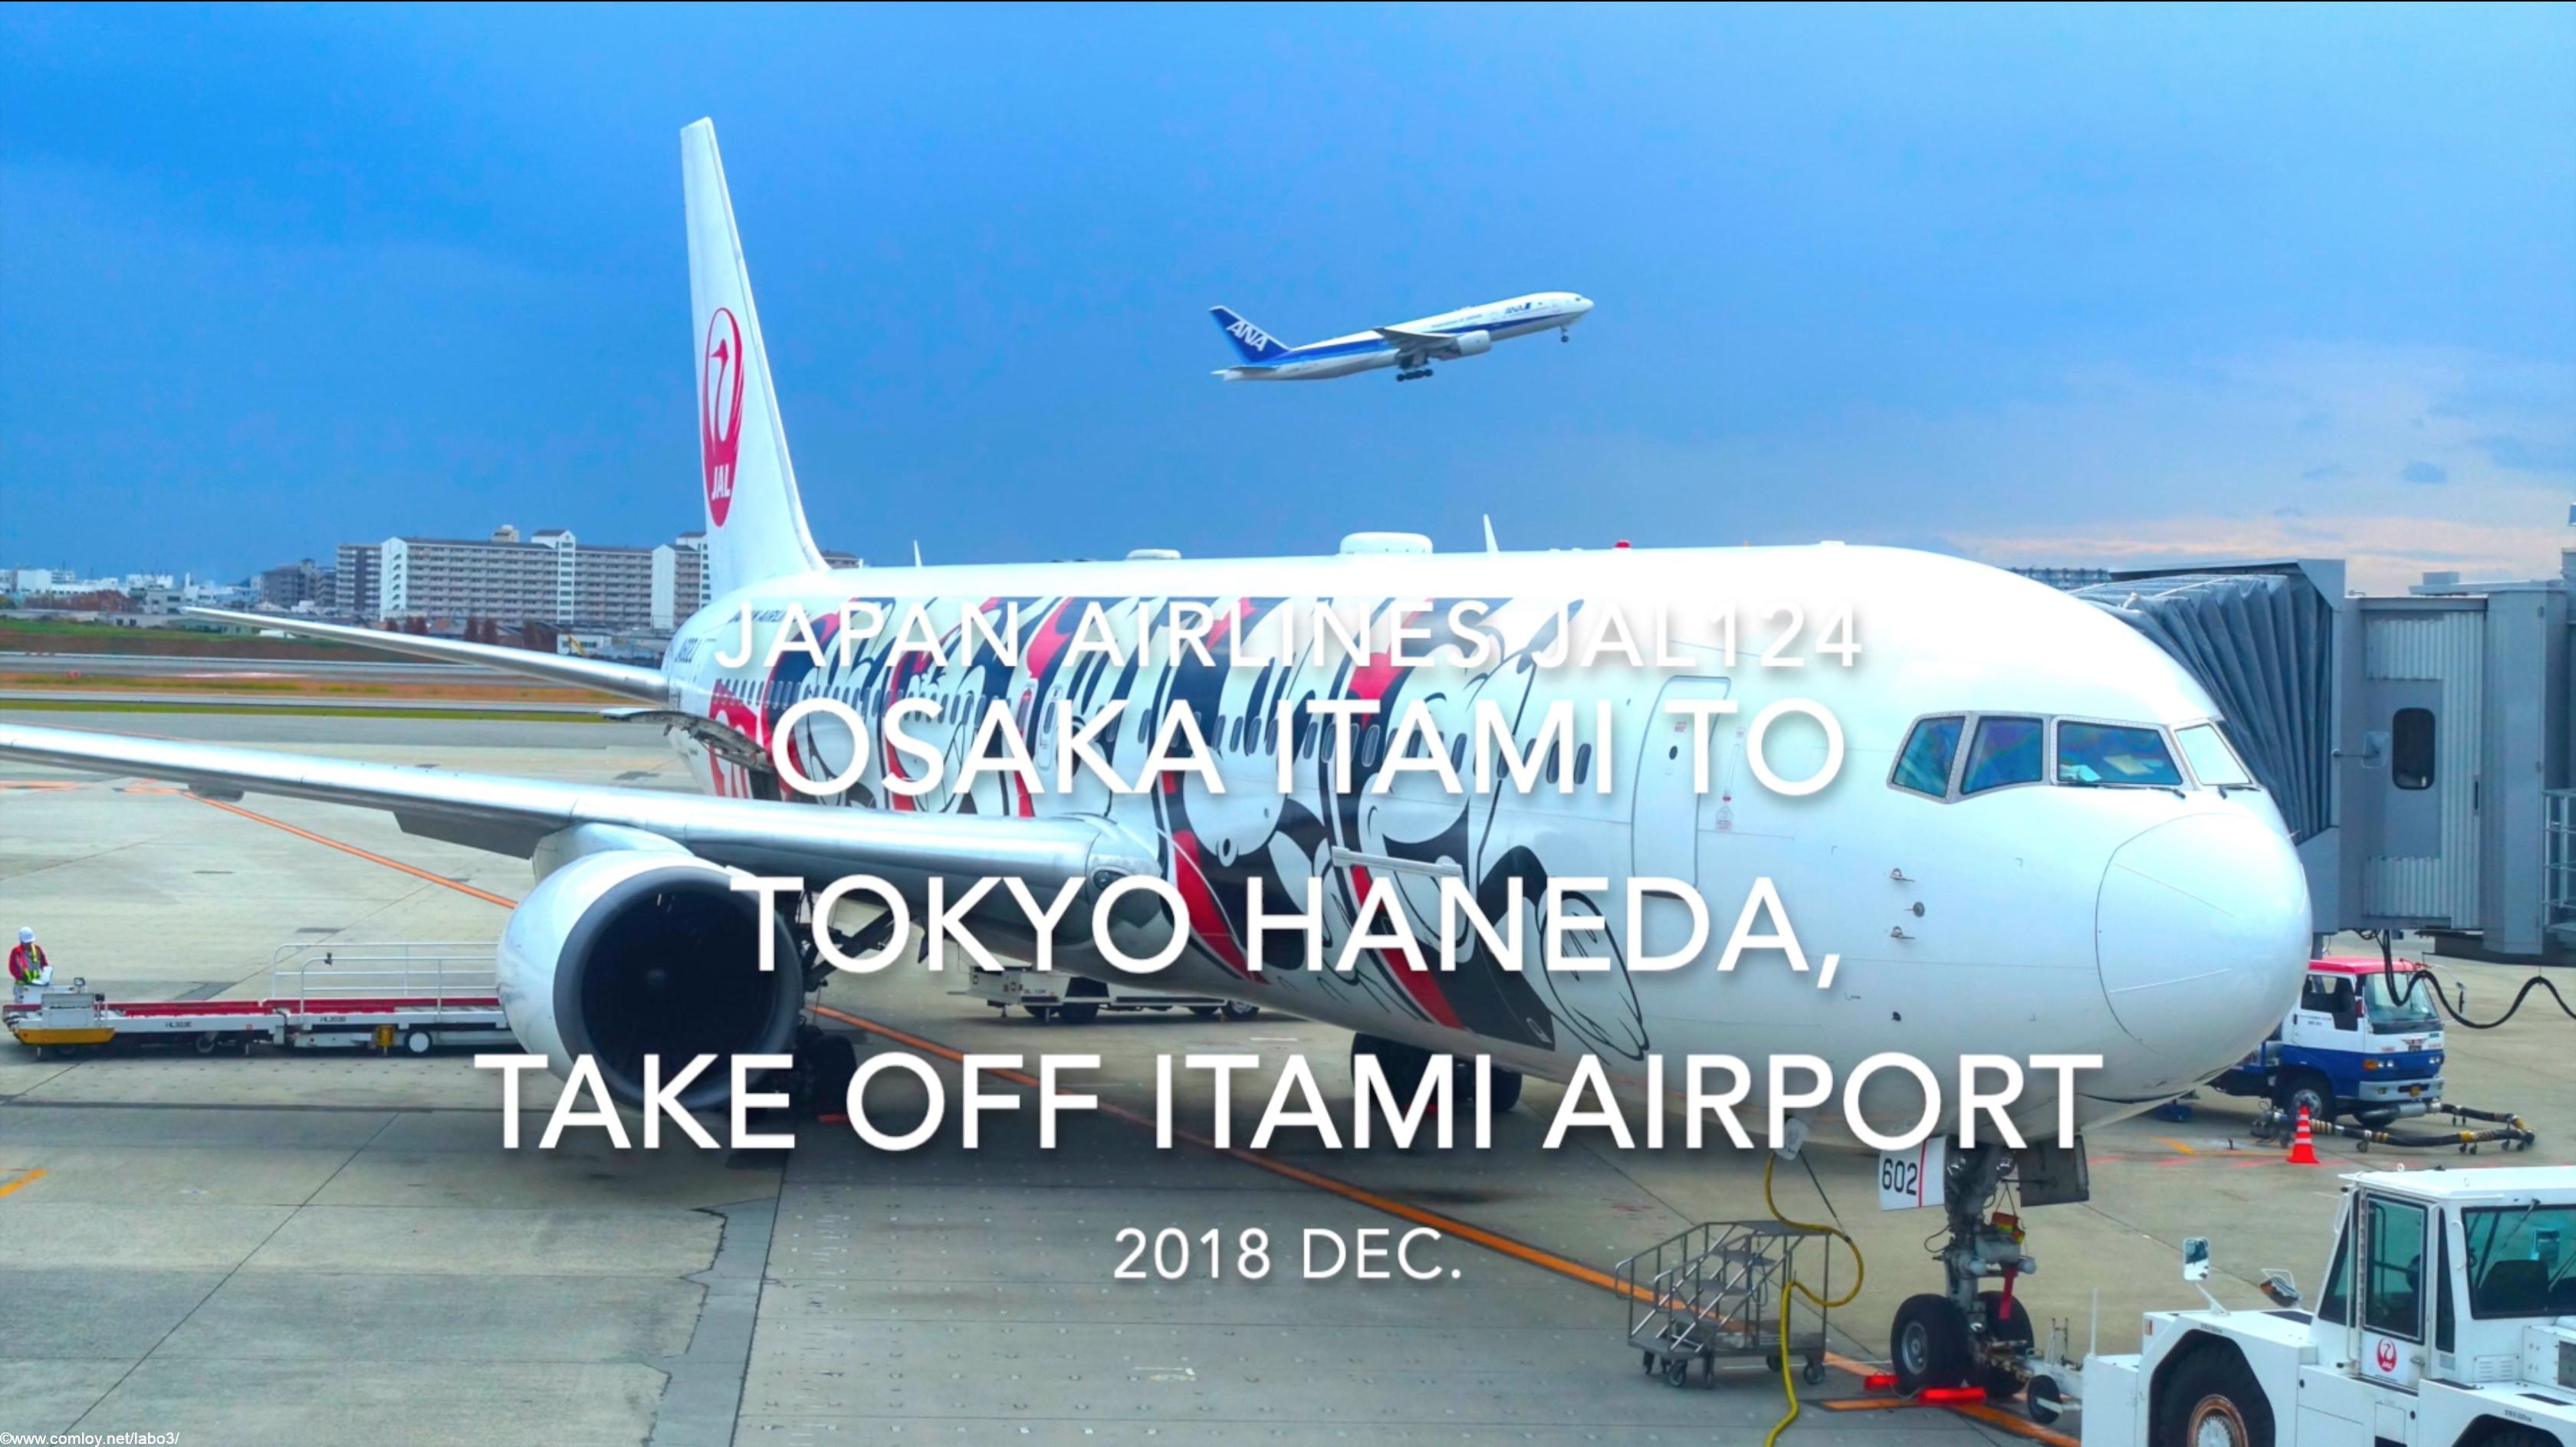 【機内から離着陸映像】2018 Dec. JAPAN Airlines JAL124 OSAKA ITAMI to TOKYO HANEDA, Take off ITAMI Airport 日本航空 伊丹 - 羽田 伊丹空港離陸